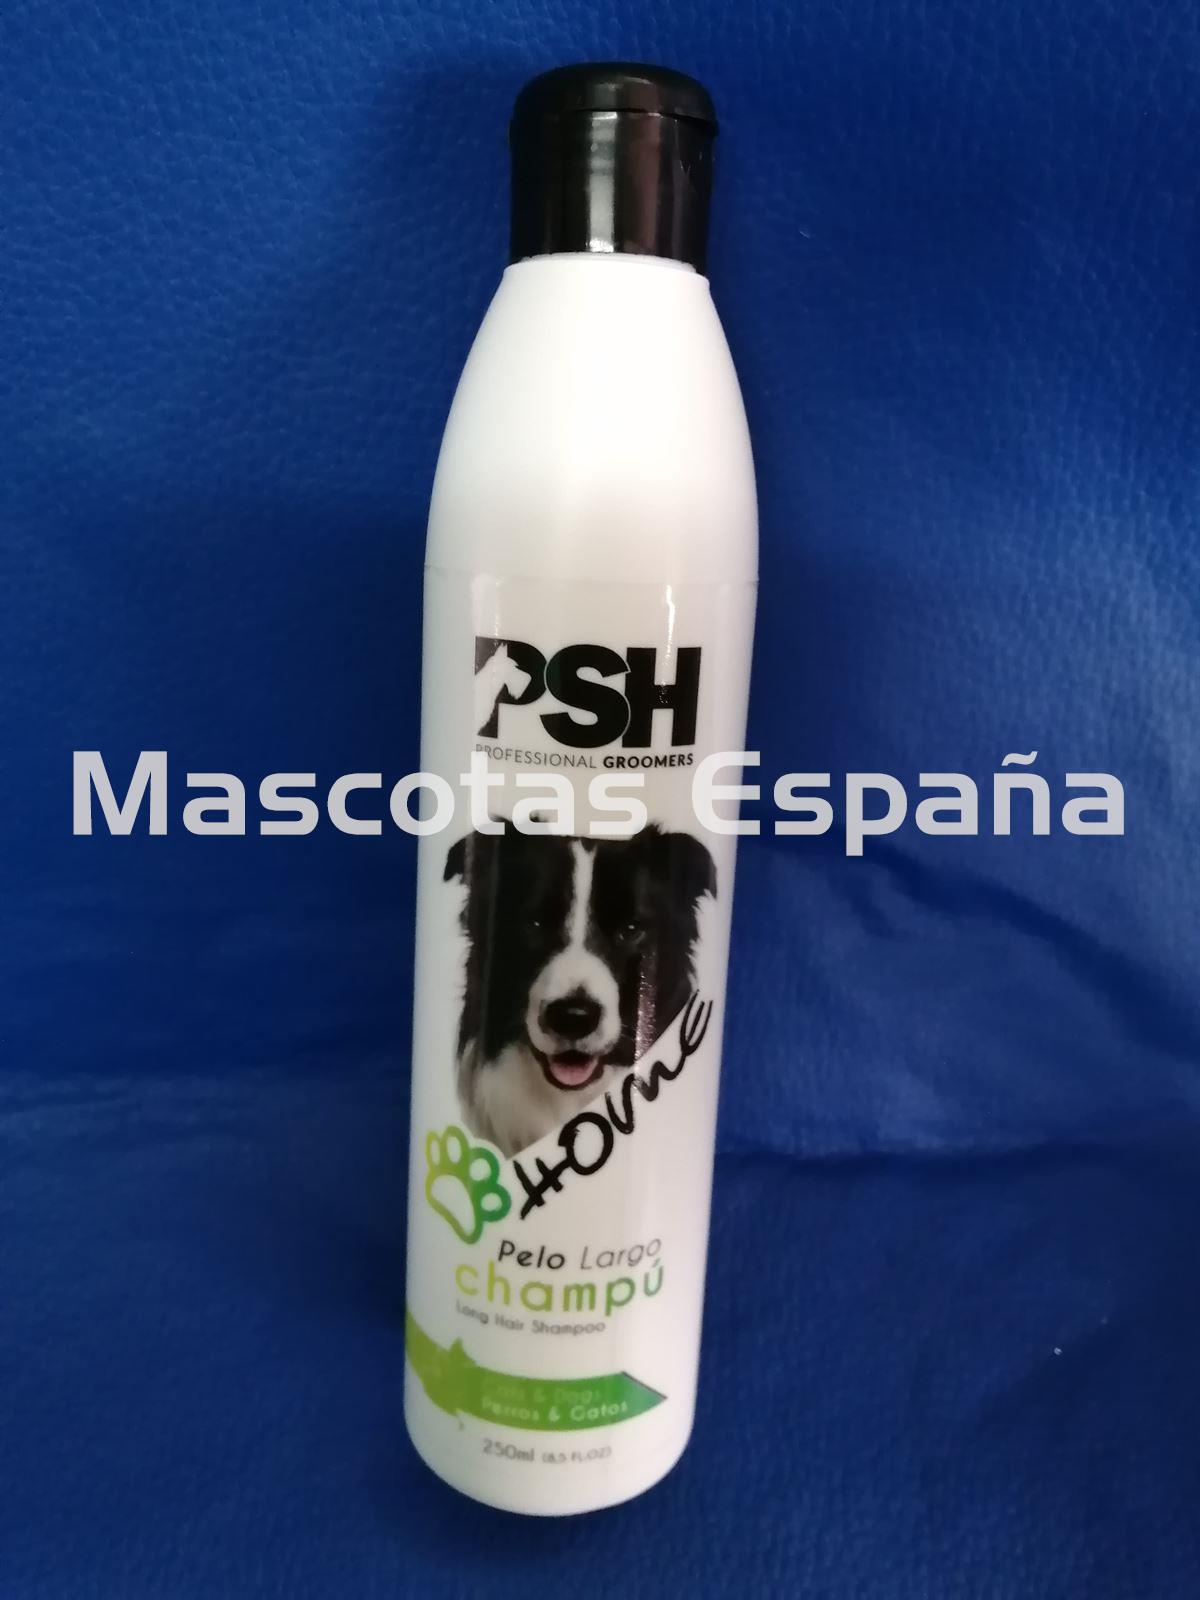 PSH HOME Champú Pelo Largo (Long Hair Shampoo) 250ml - Imagen 1